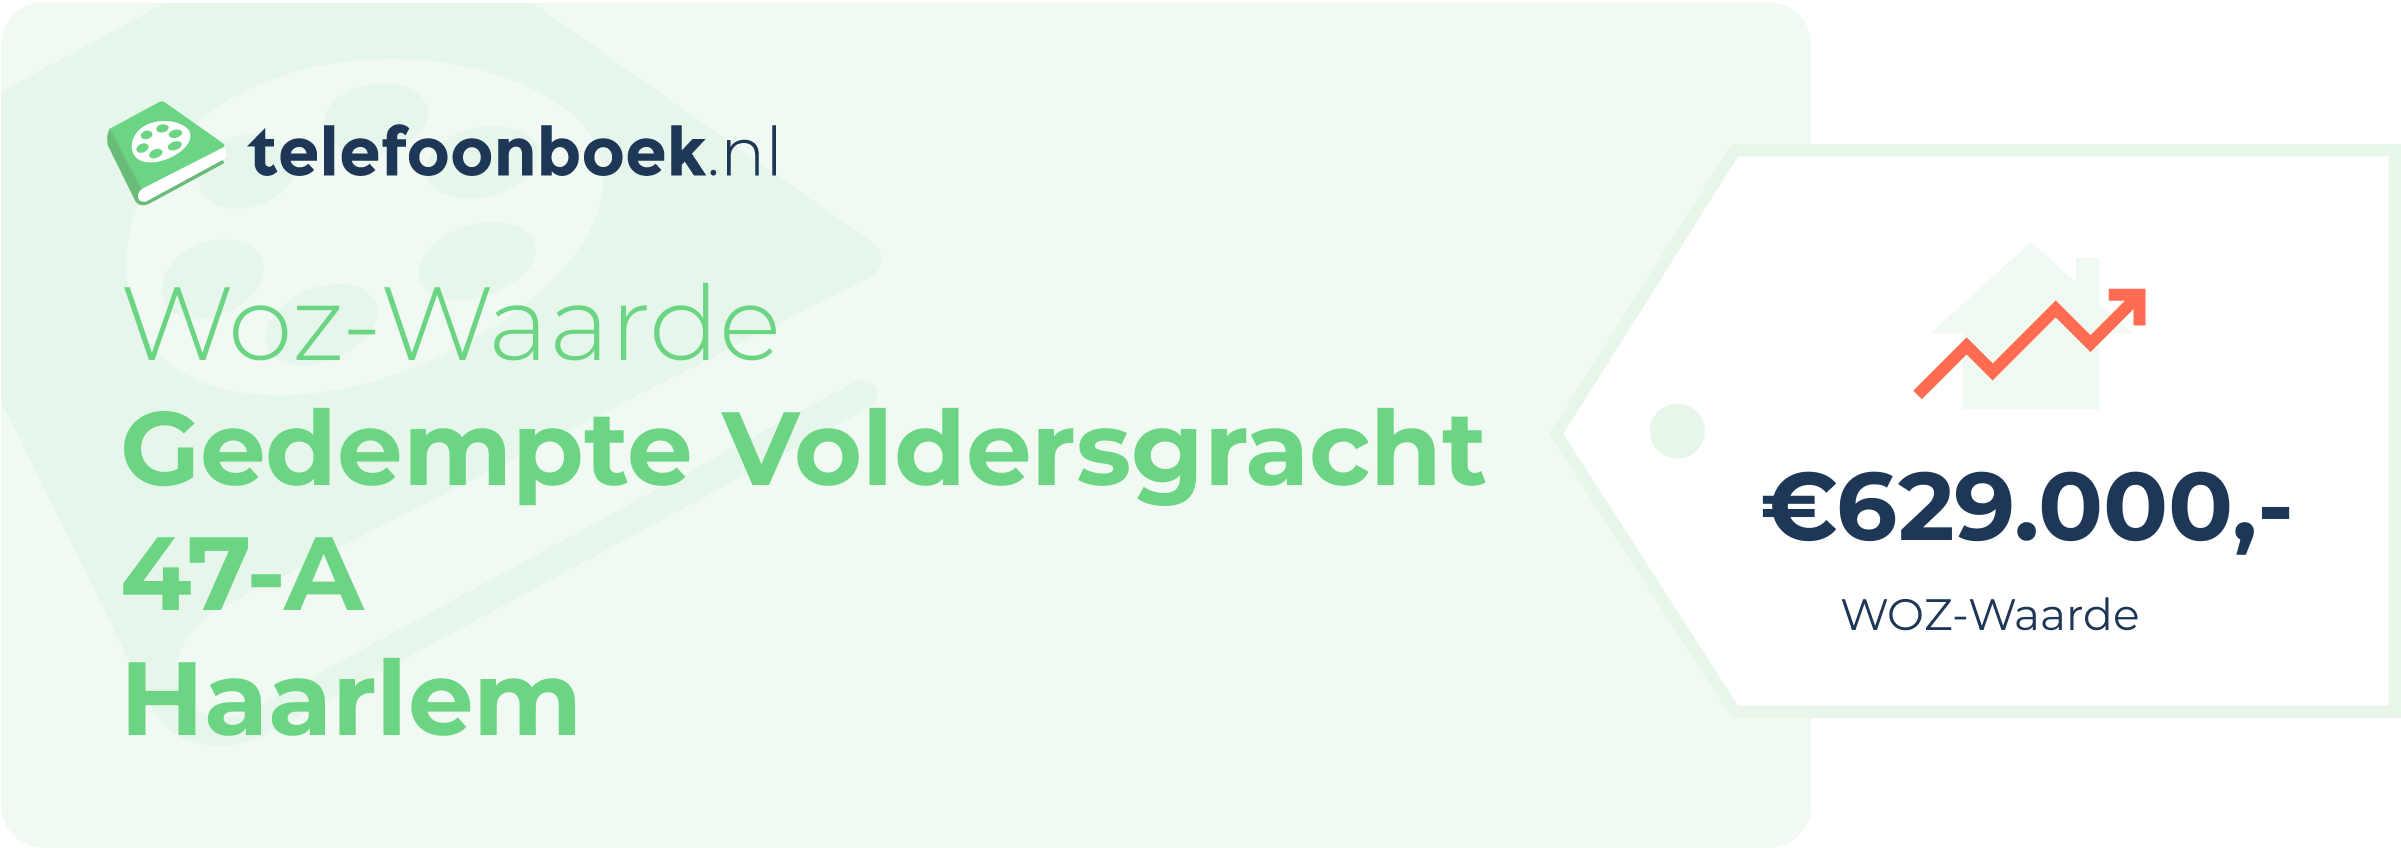 WOZ-waarde Gedempte Voldersgracht 47-A Haarlem